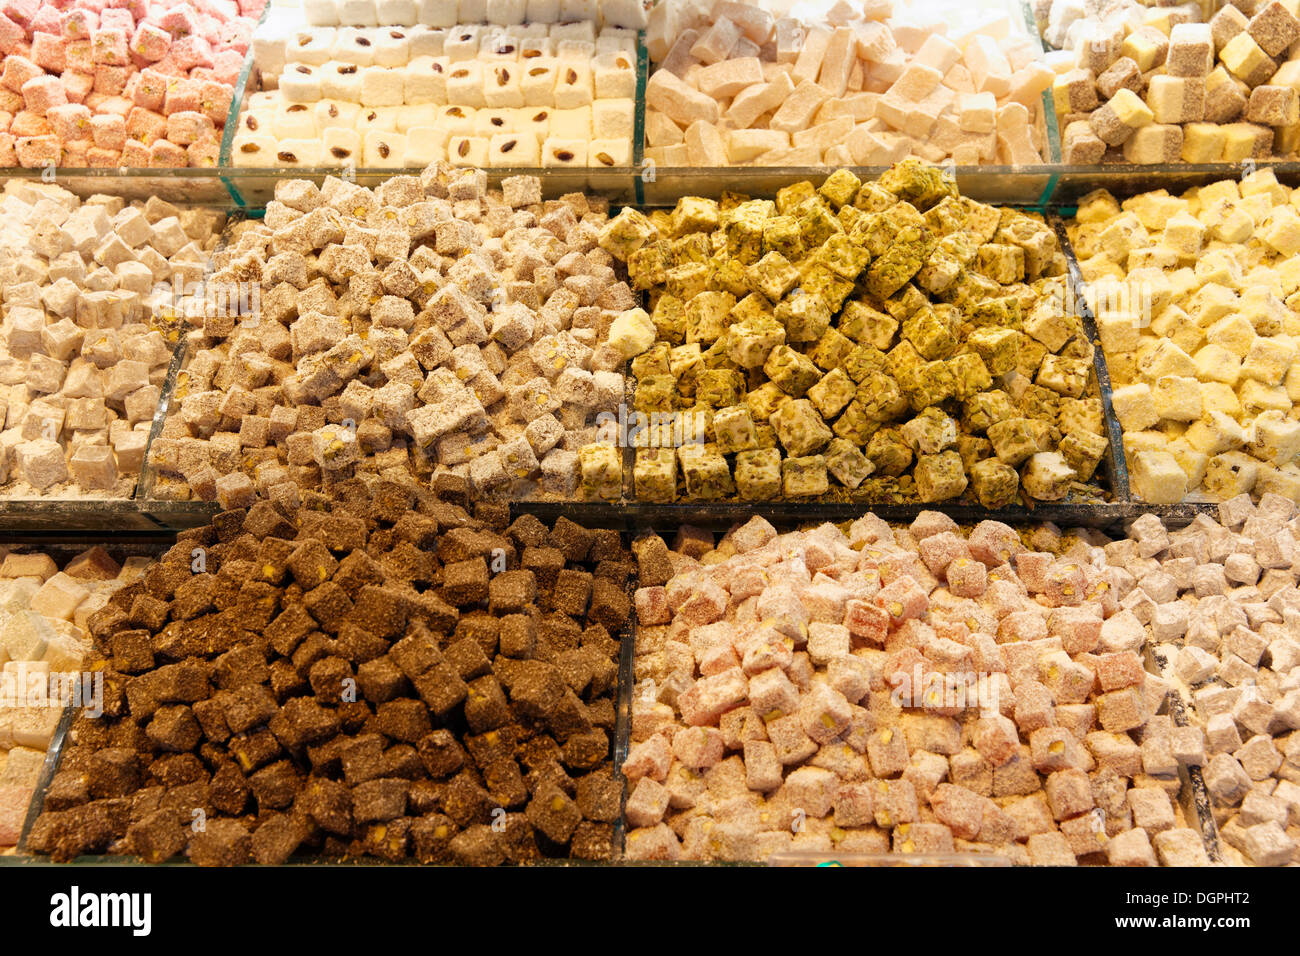 Loukoum et autres sucreries, Bazar égyptien ou marché aux épices, Misir Çarşısı, Eminönü, Istanbul, côté Européen Banque D'Images